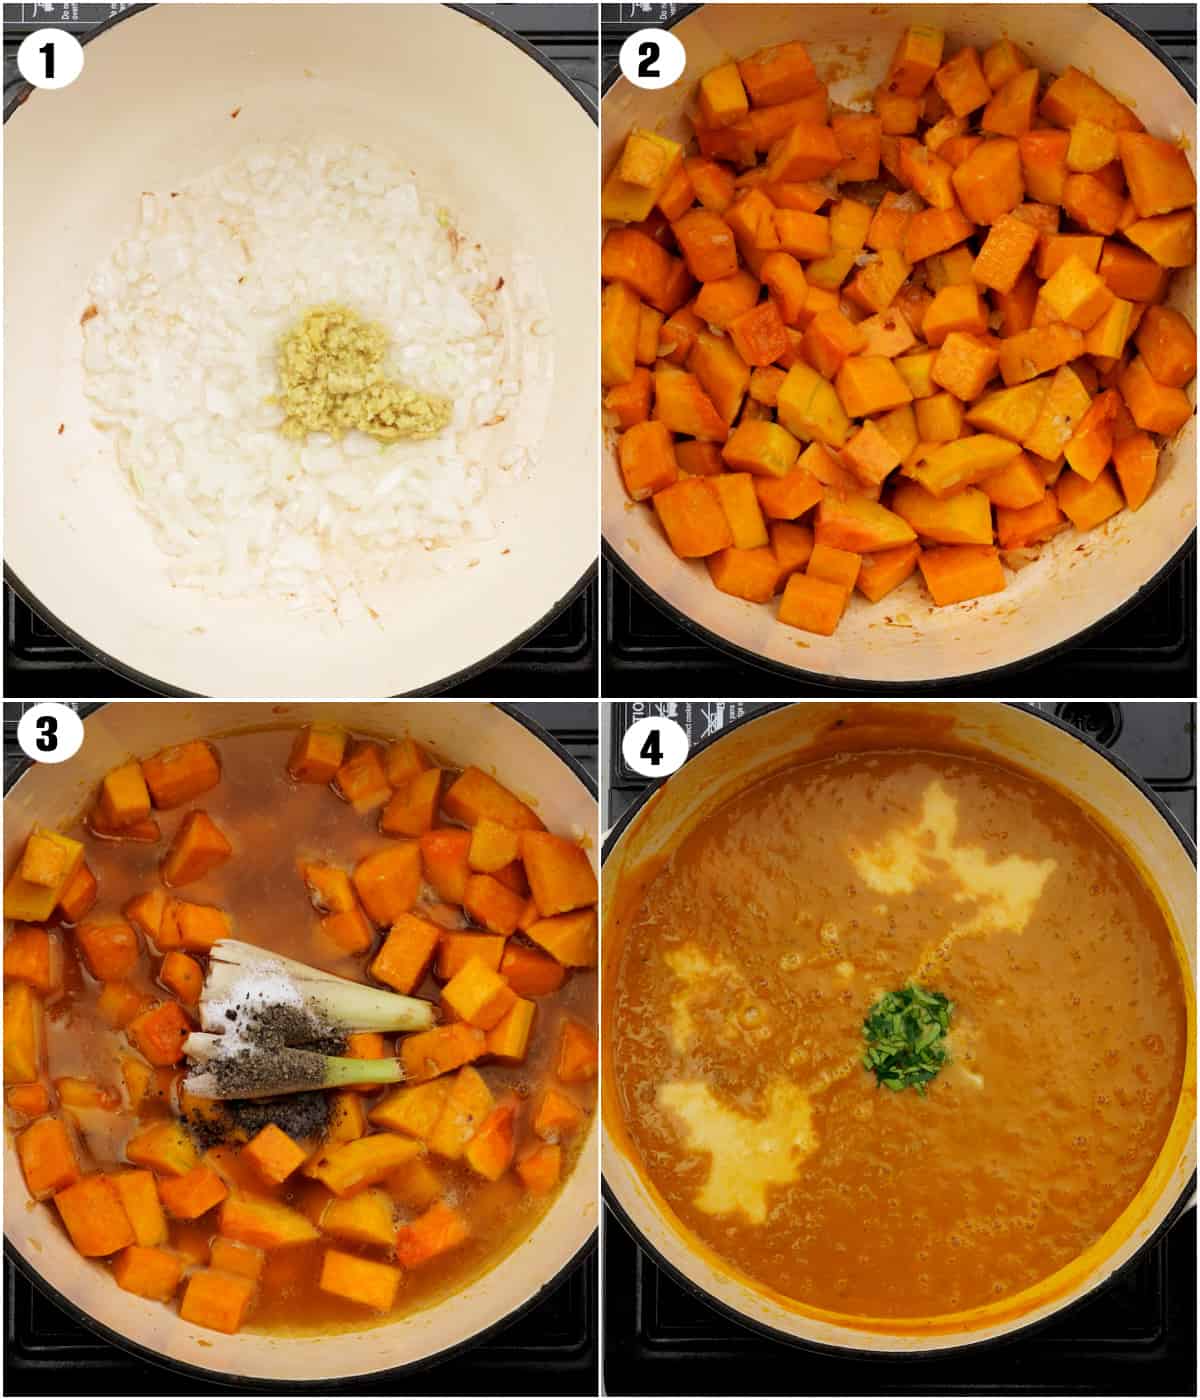 Steps showing Thai pumpkin soup